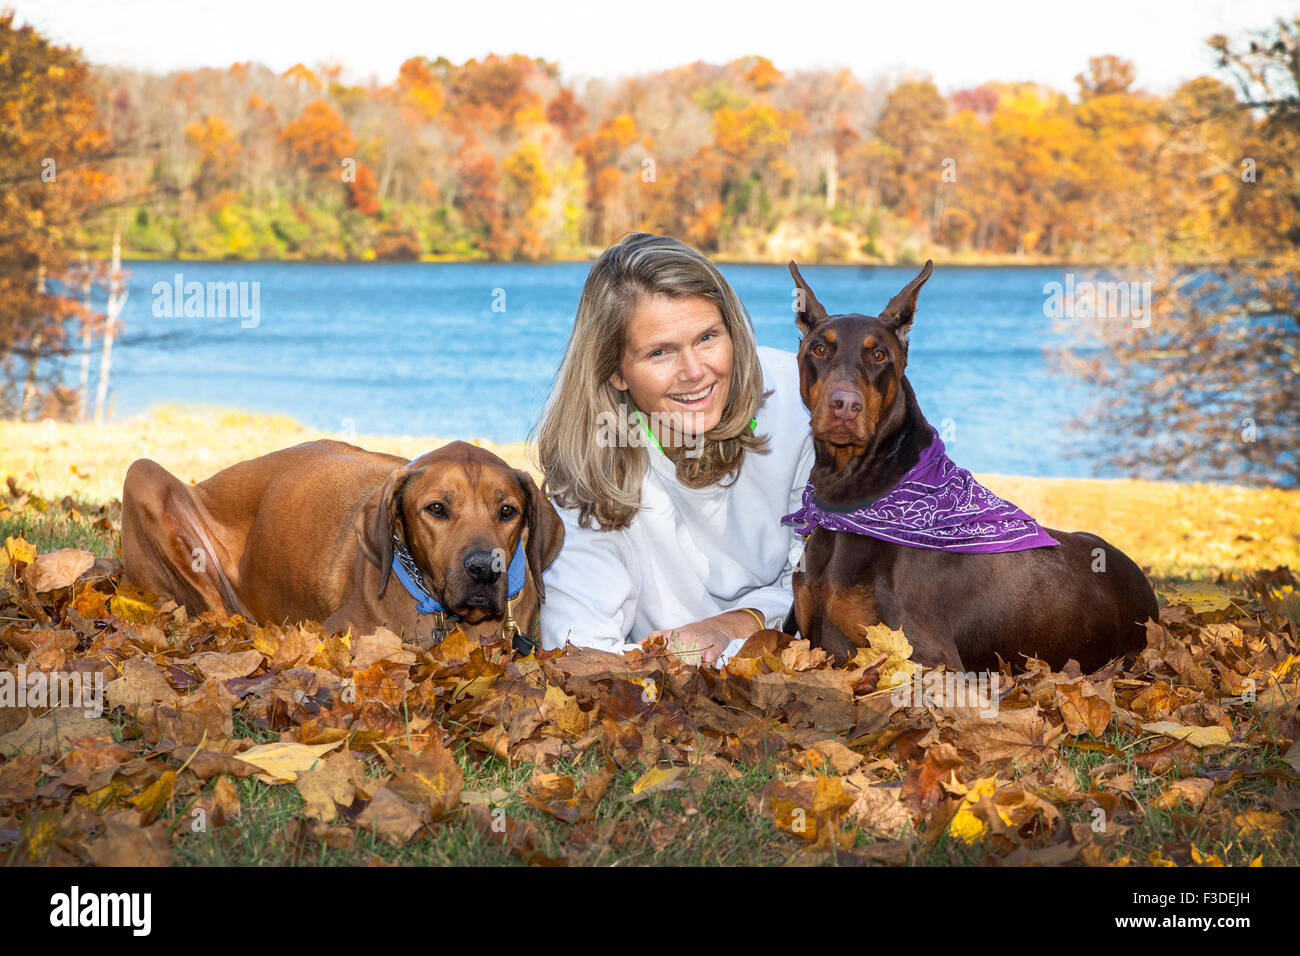 Reife attraktive mittleren Alter Frau mit langen Haaren, Verlegung im Herbst Blätter mit ihren 2 große Haustier Begleiter Hunden vor einem See Stockfoto